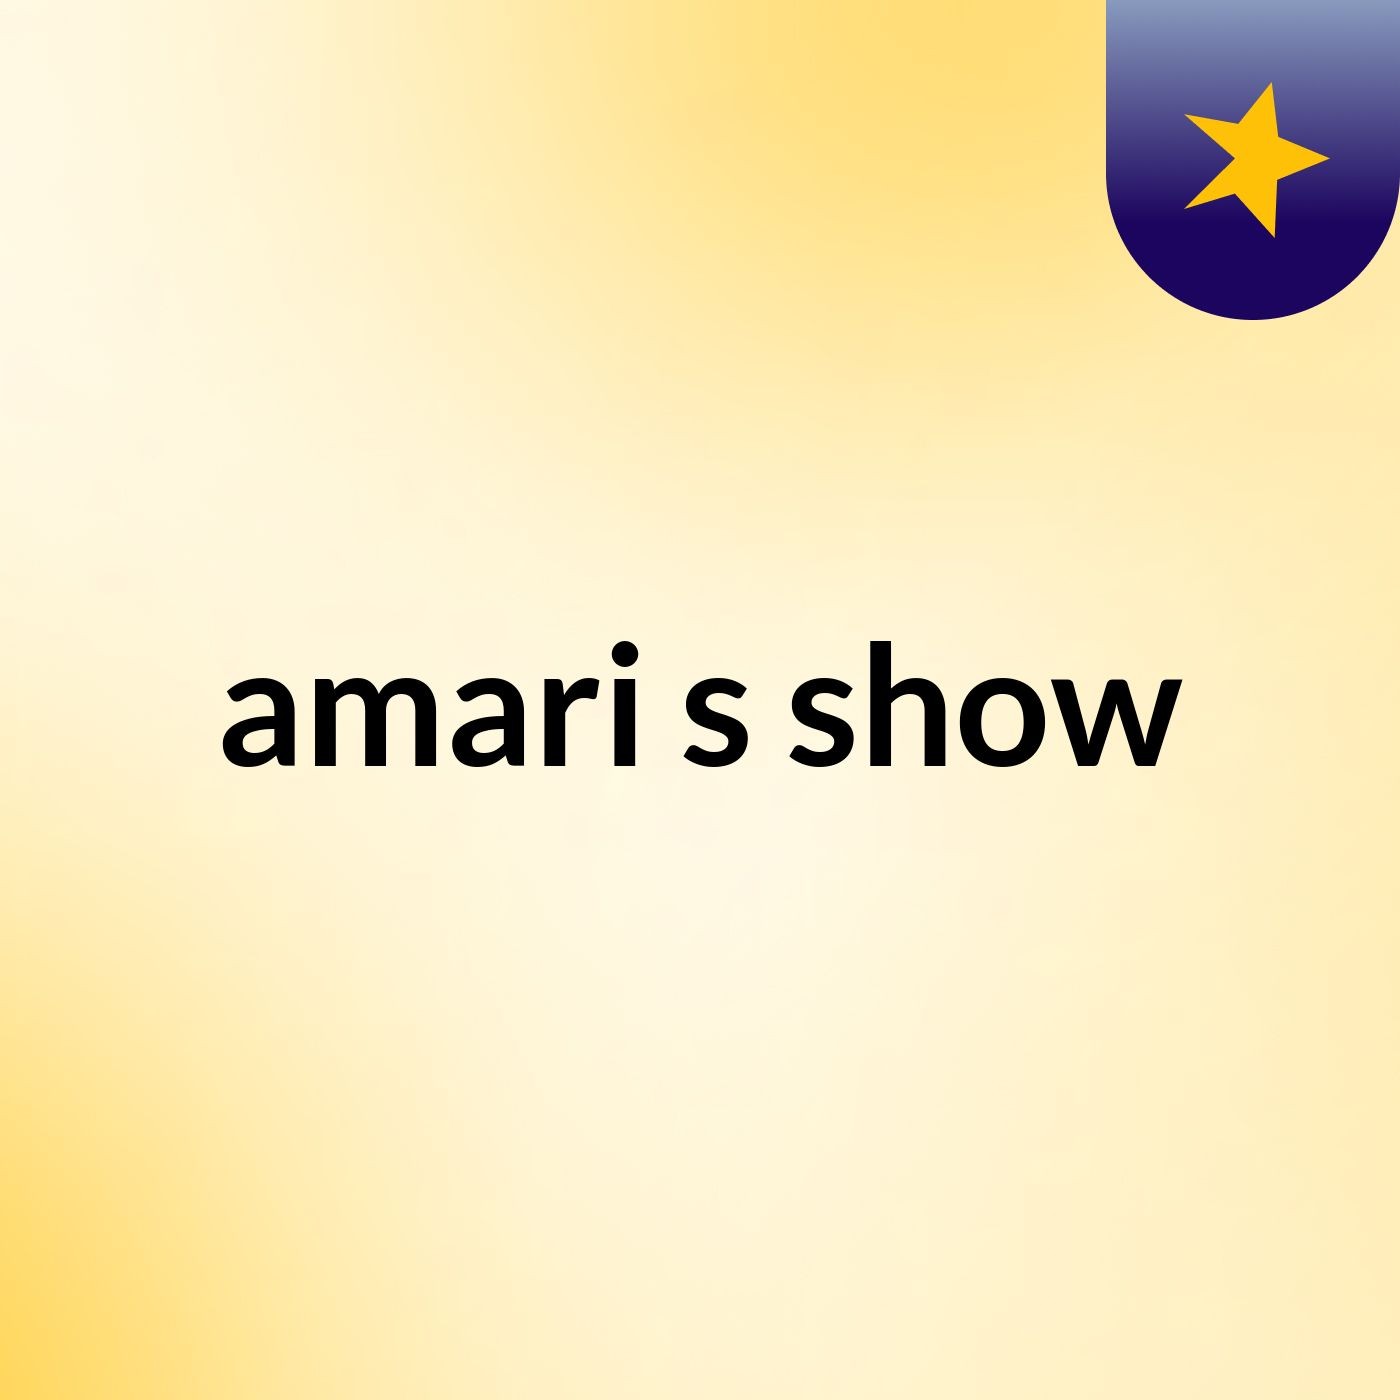 amari's show